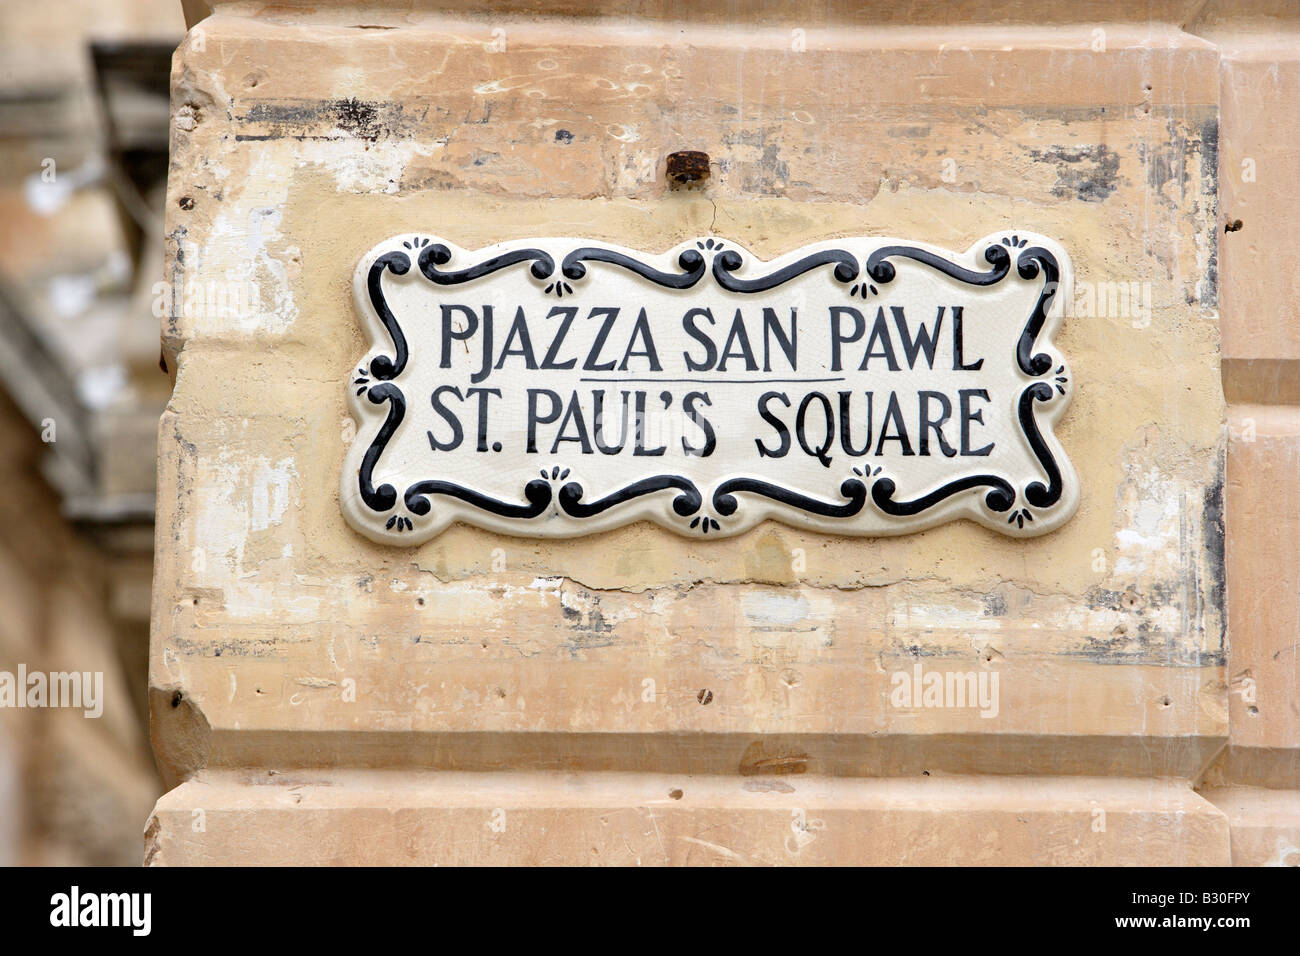 St Paul's Square plaque céramique, Mdina, Malte Banque D'Images